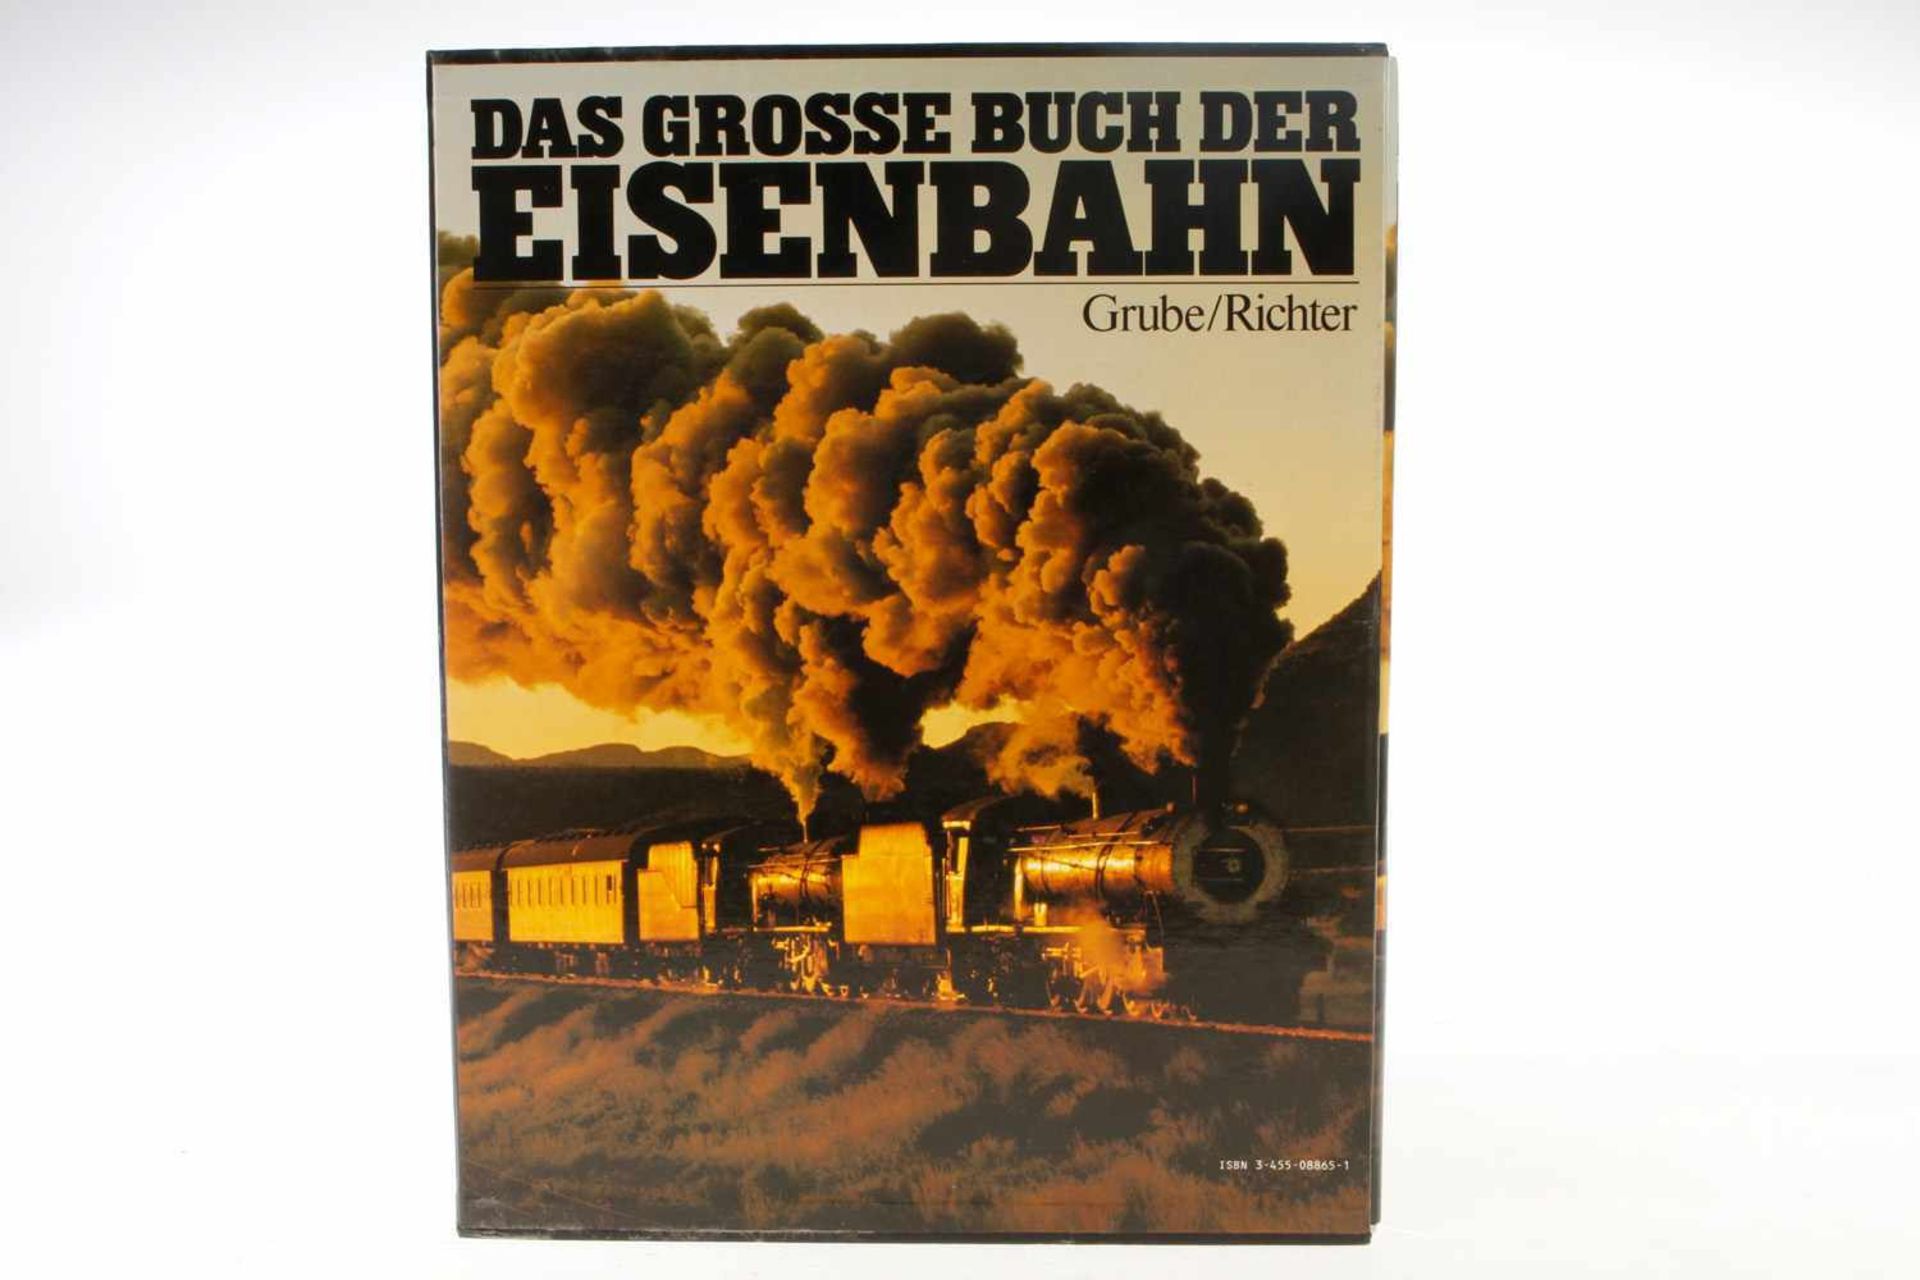 Buch "Das große Buch der Eisenbahn", 1979, 312 Seiten, im Schuber, Alterungsspuren